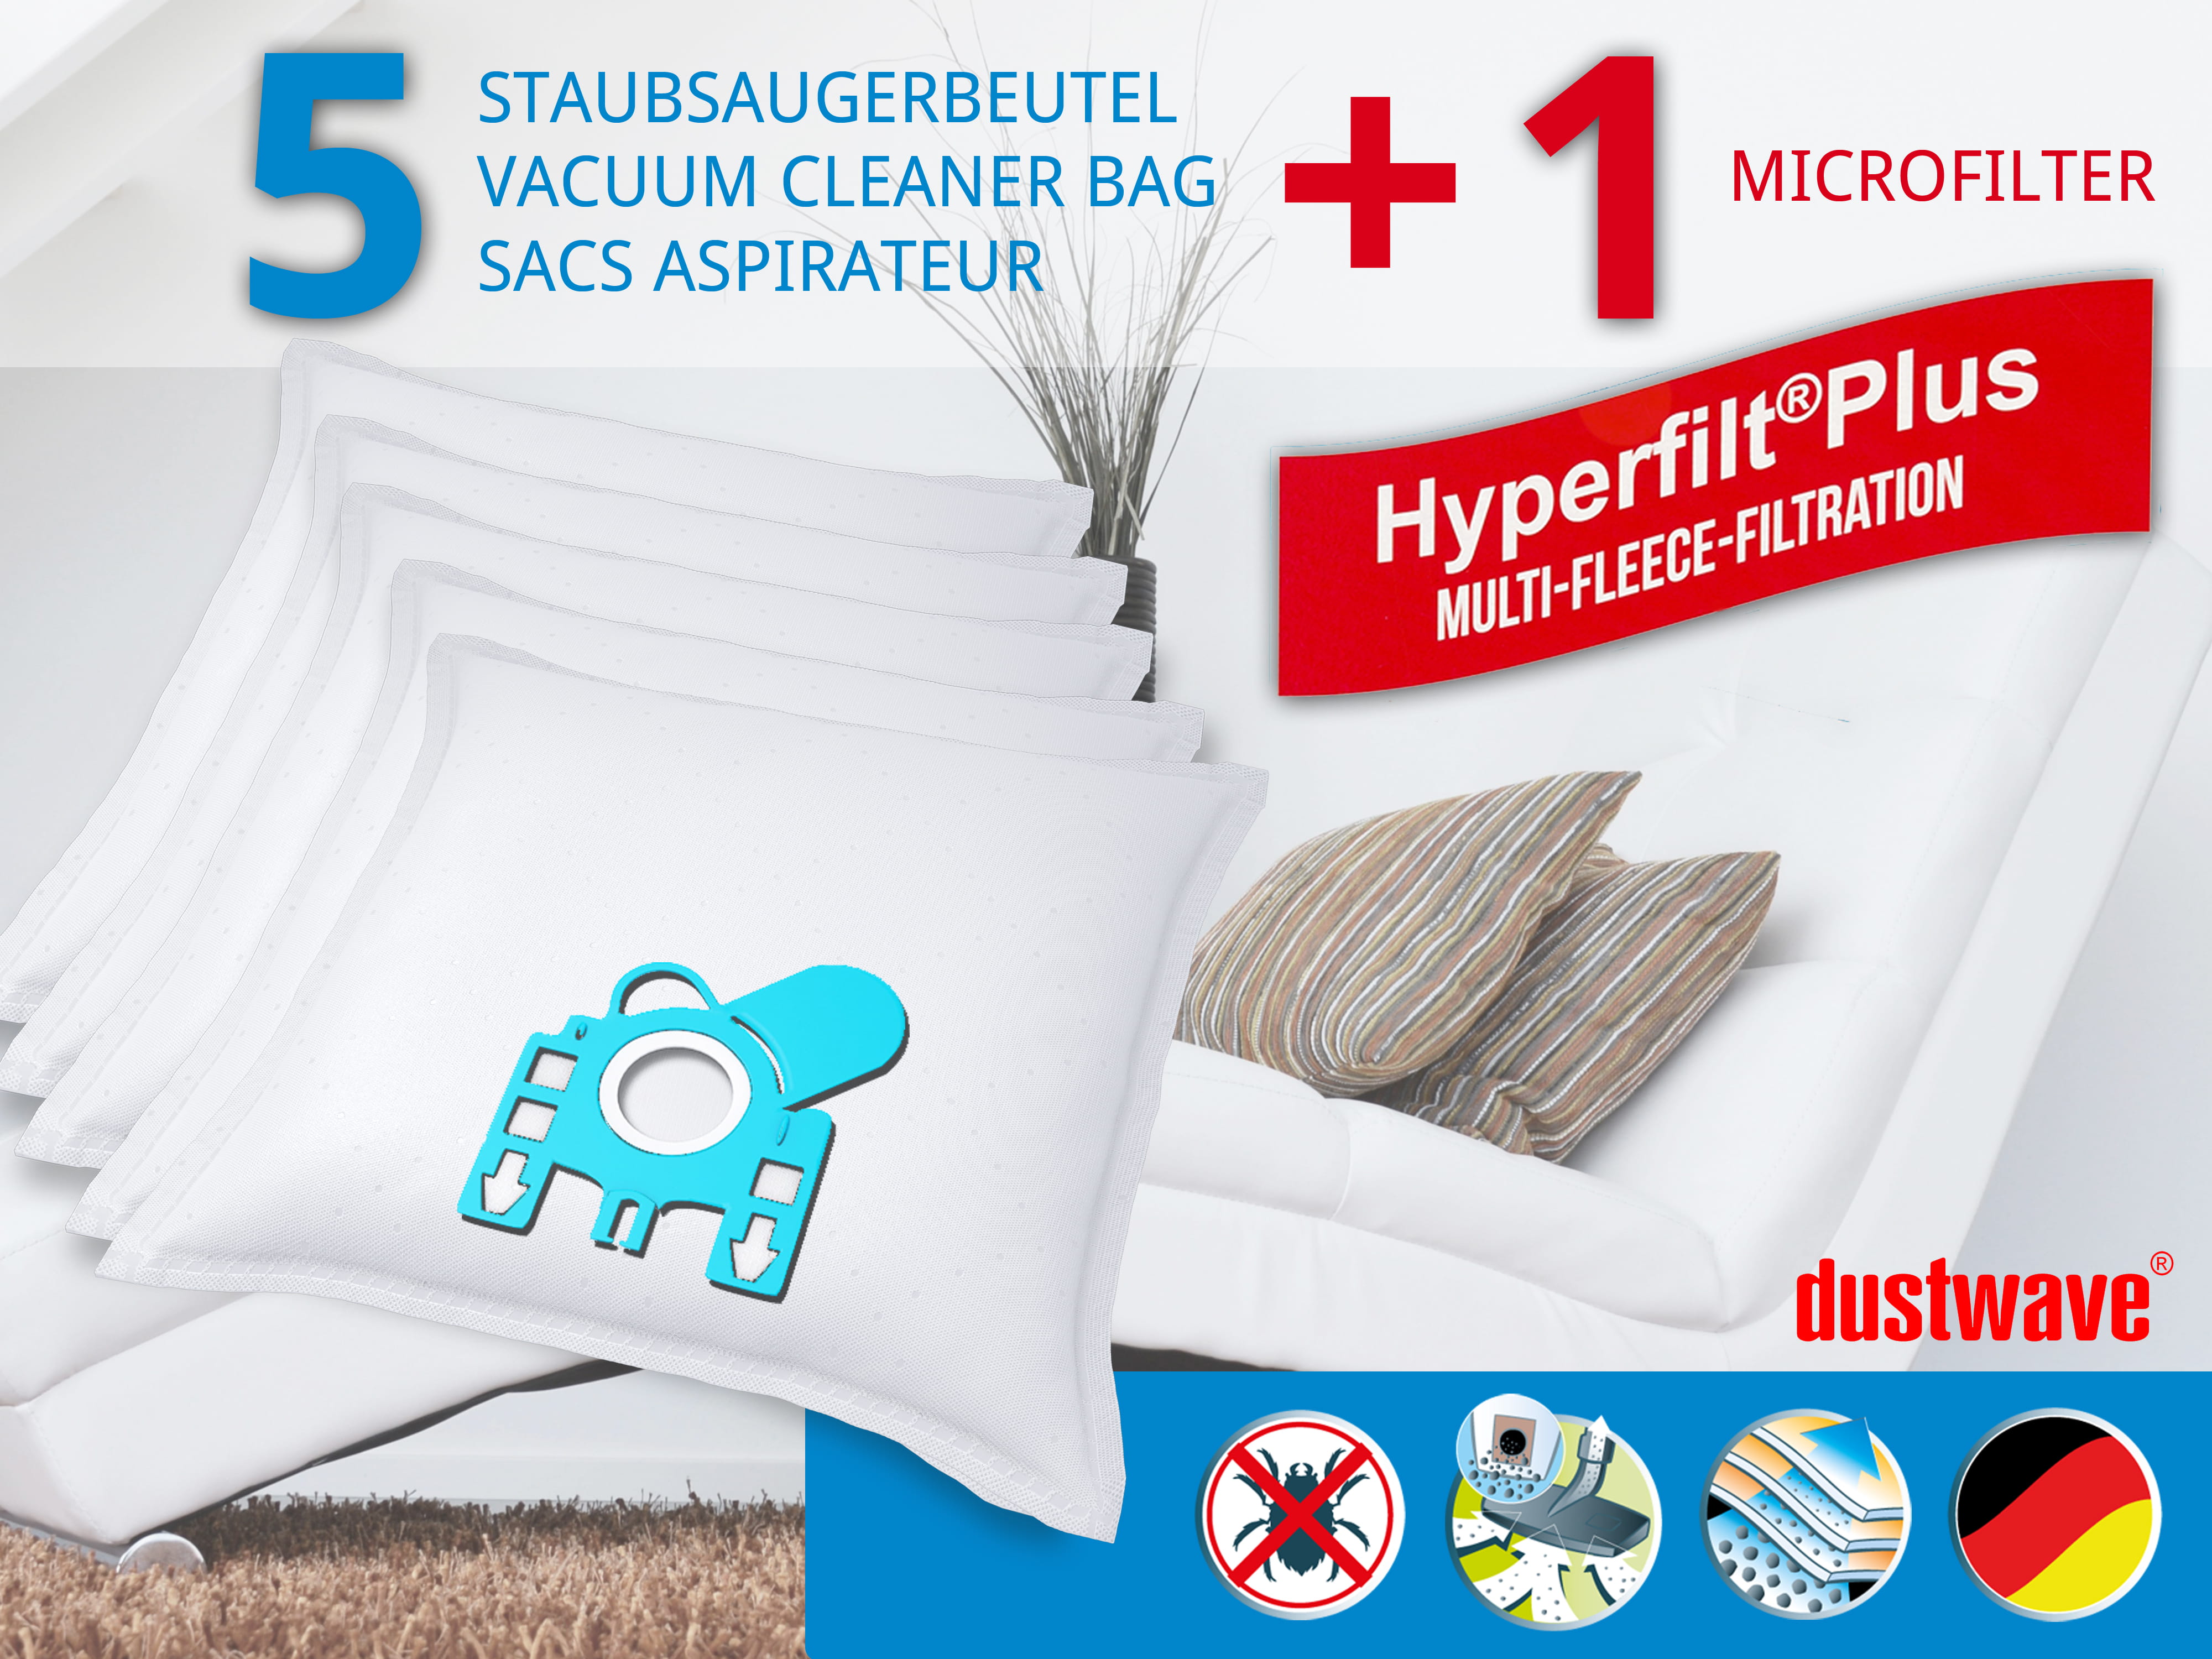 Dustwave® 5 Staubsaugerbeutel für Miele S408i / S 408 i - hocheffizient, mehrlagiges Mikrovlies mit Hygieneverschluss - Made in Germany